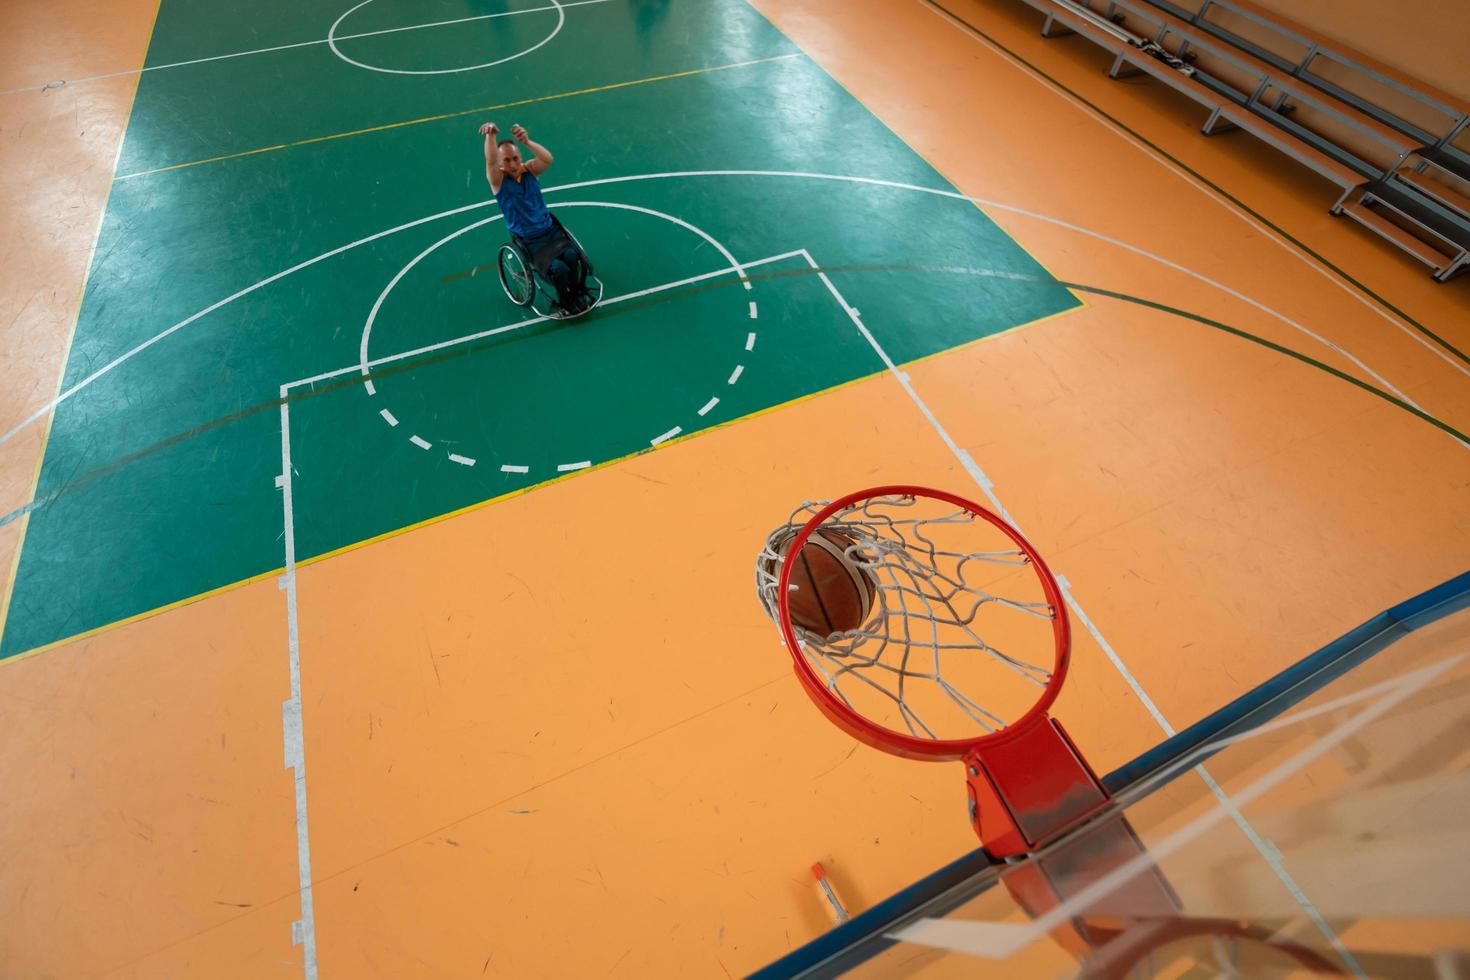 Abschleppfoto eines Kriegsveteranen, der Basketball in einer modernen Sportarena spielt. das Konzept des Sports für Menschen mit Behinderungen foto